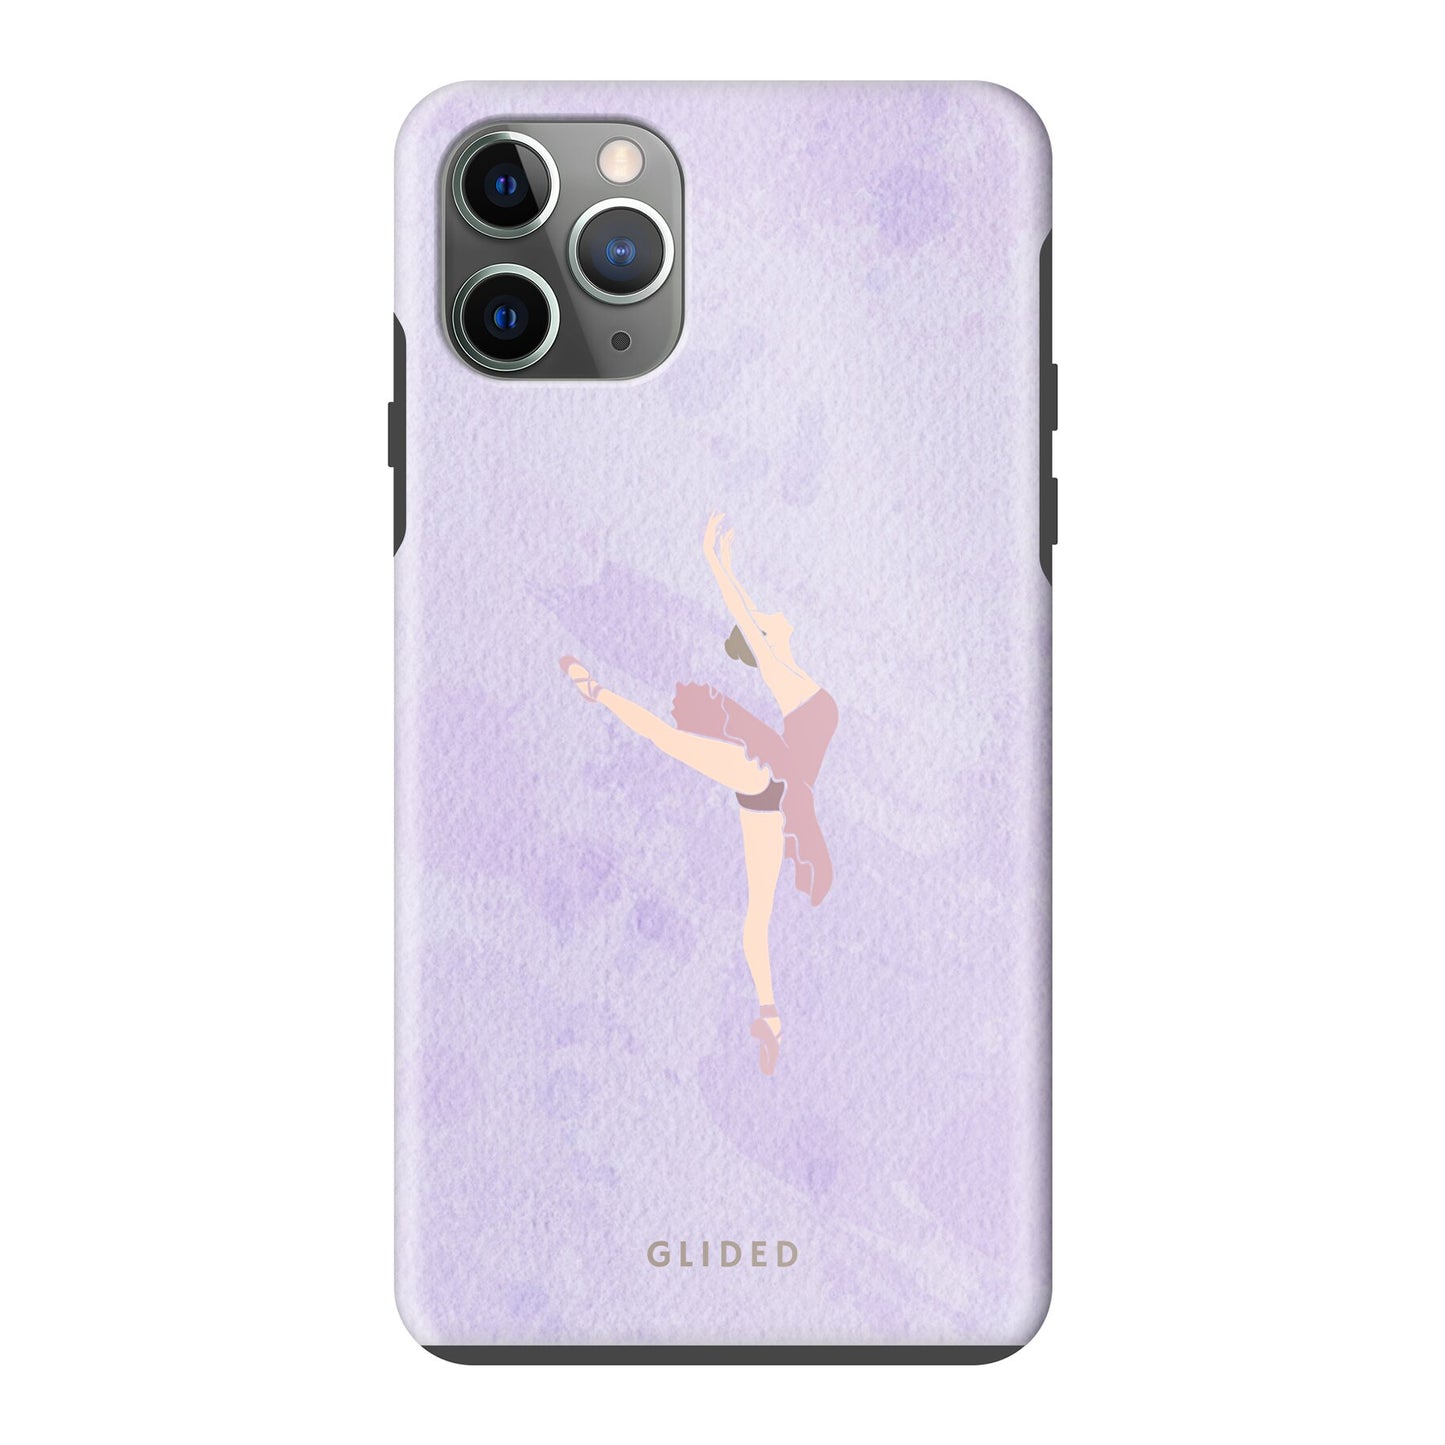 Lavender - iPhone 11 Pro Max Handyhülle Tough case